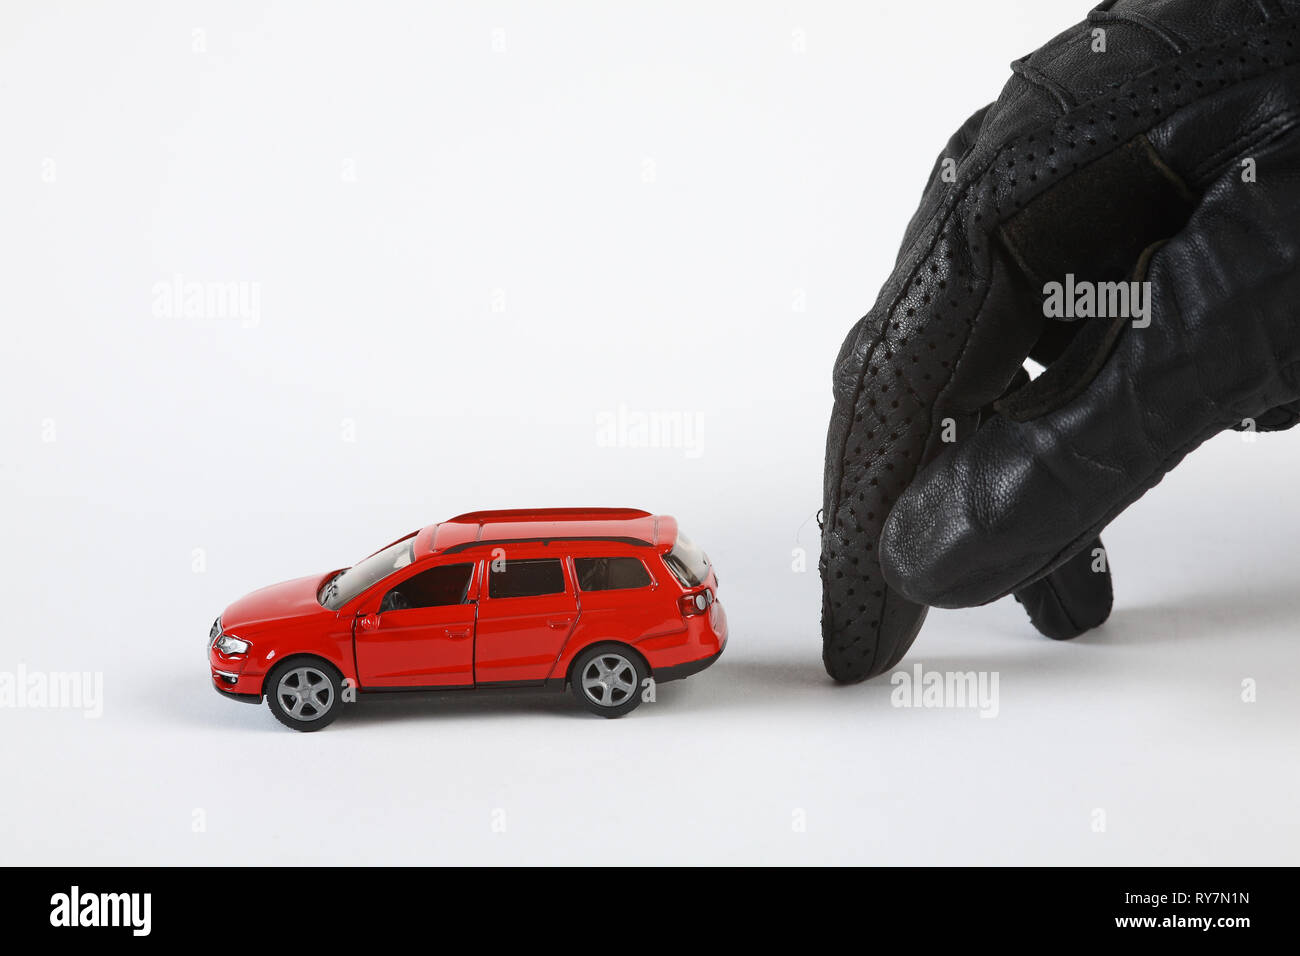 Une main gantée se déplace tranquillement vers une (miniature) voiture pour la voler. Banque D'Images